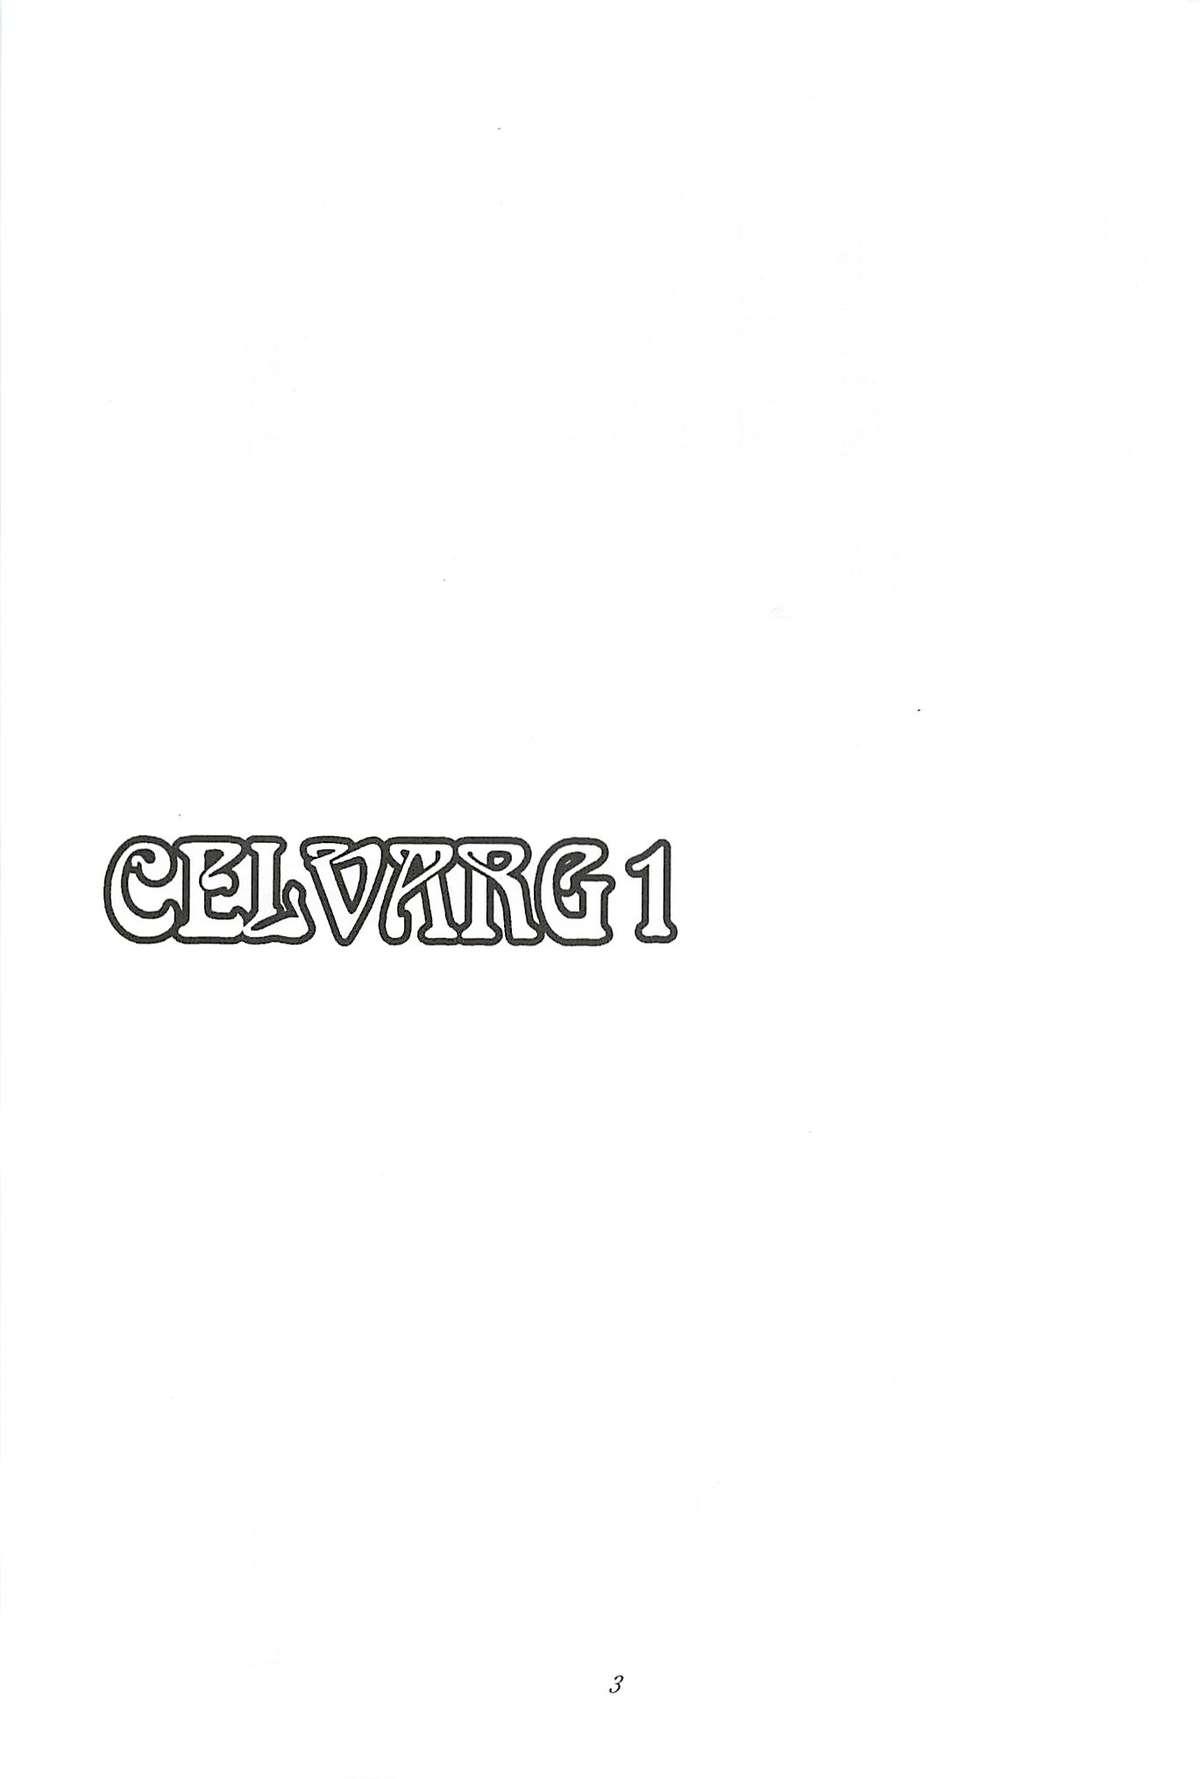 CELVARG1 1